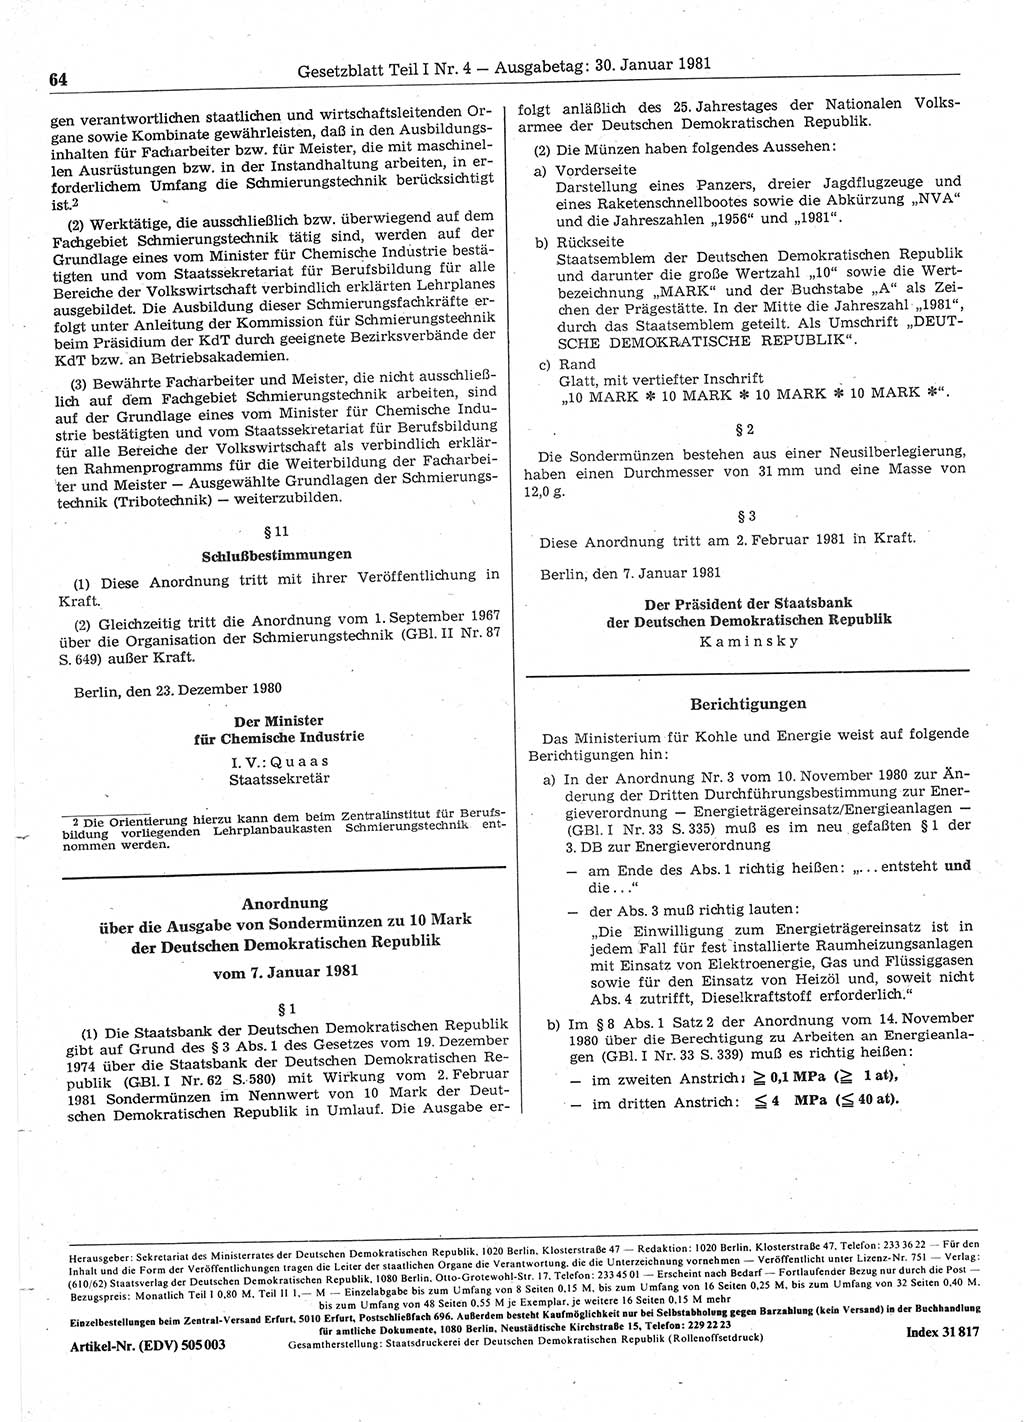 Gesetzblatt (GBl.) der Deutschen Demokratischen Republik (DDR) Teil Ⅰ 1981, Seite 64 (GBl. DDR Ⅰ 1981, S. 64)